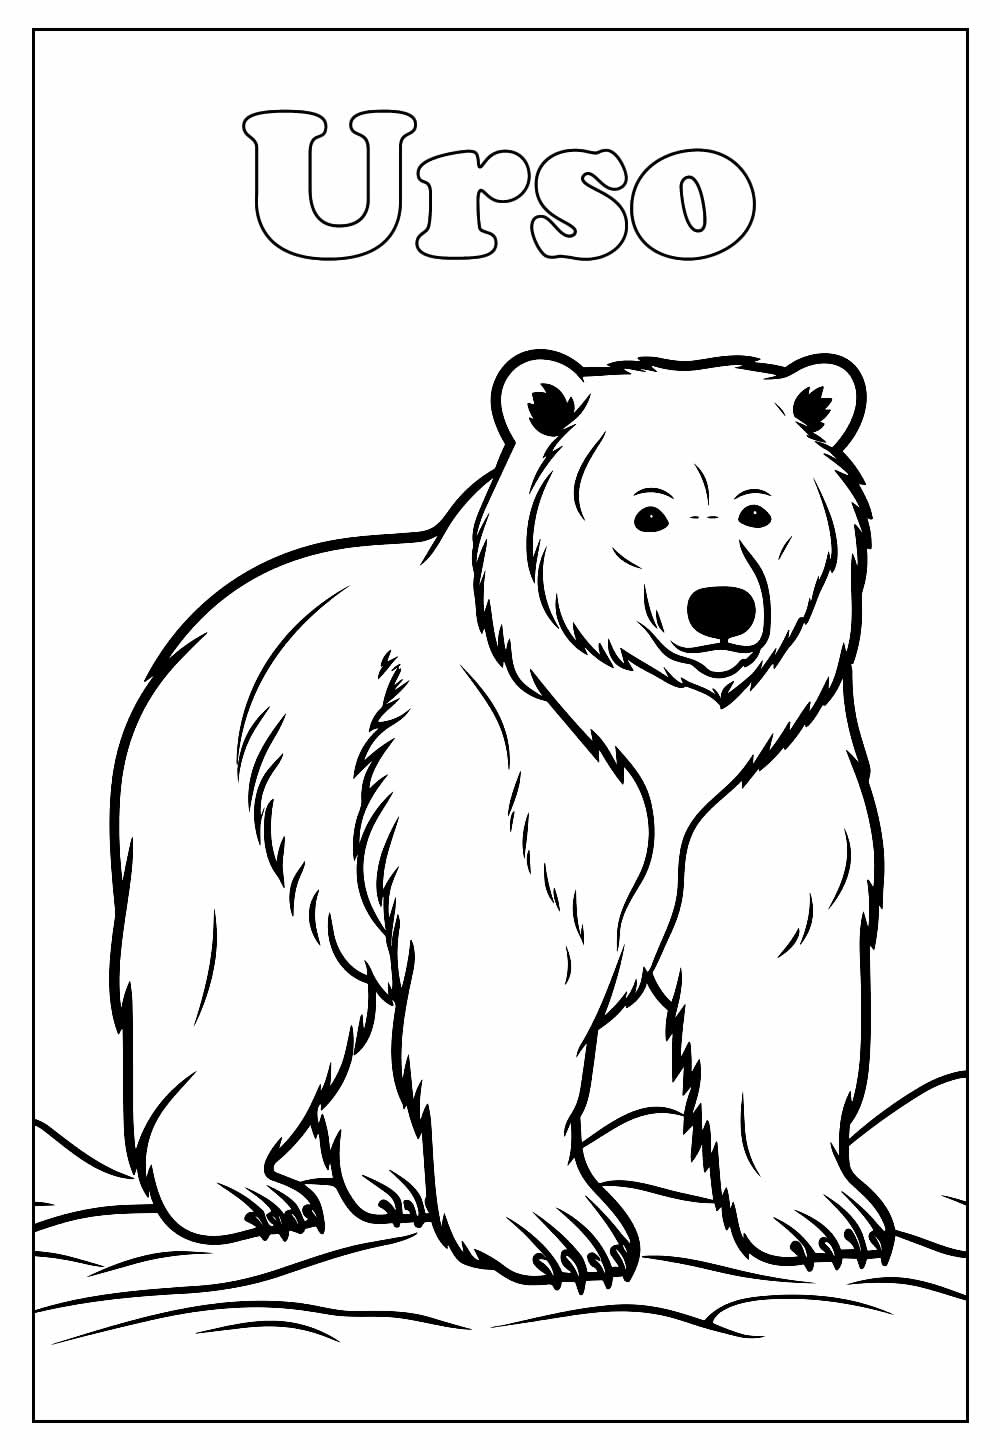 Urso para colorir